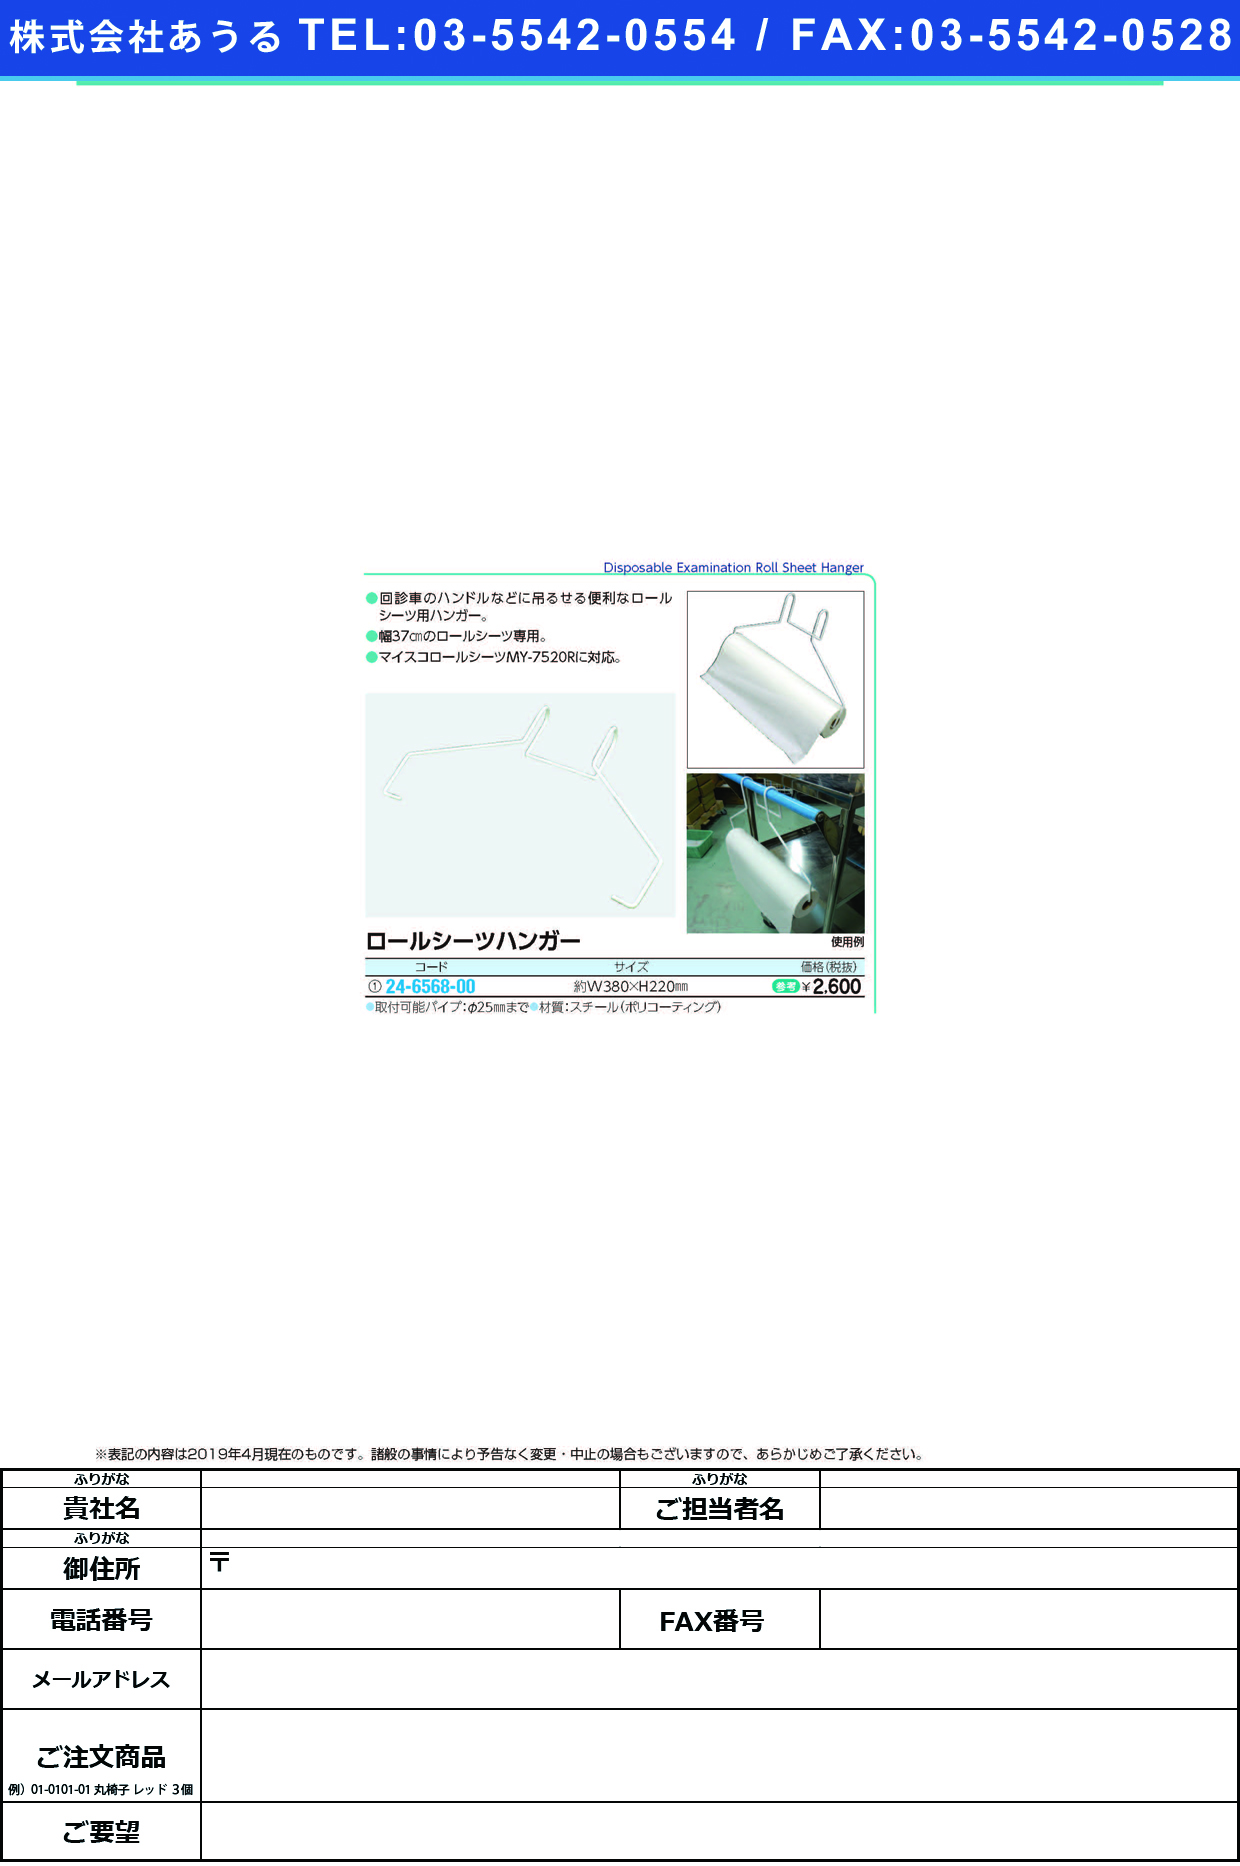 (24-6568-00)ロールシーツハンガー 380X220MM ﾛｰﾙｼｰﾂﾊﾝｶﾞｰ【1個単位】【2019年カタログ商品】